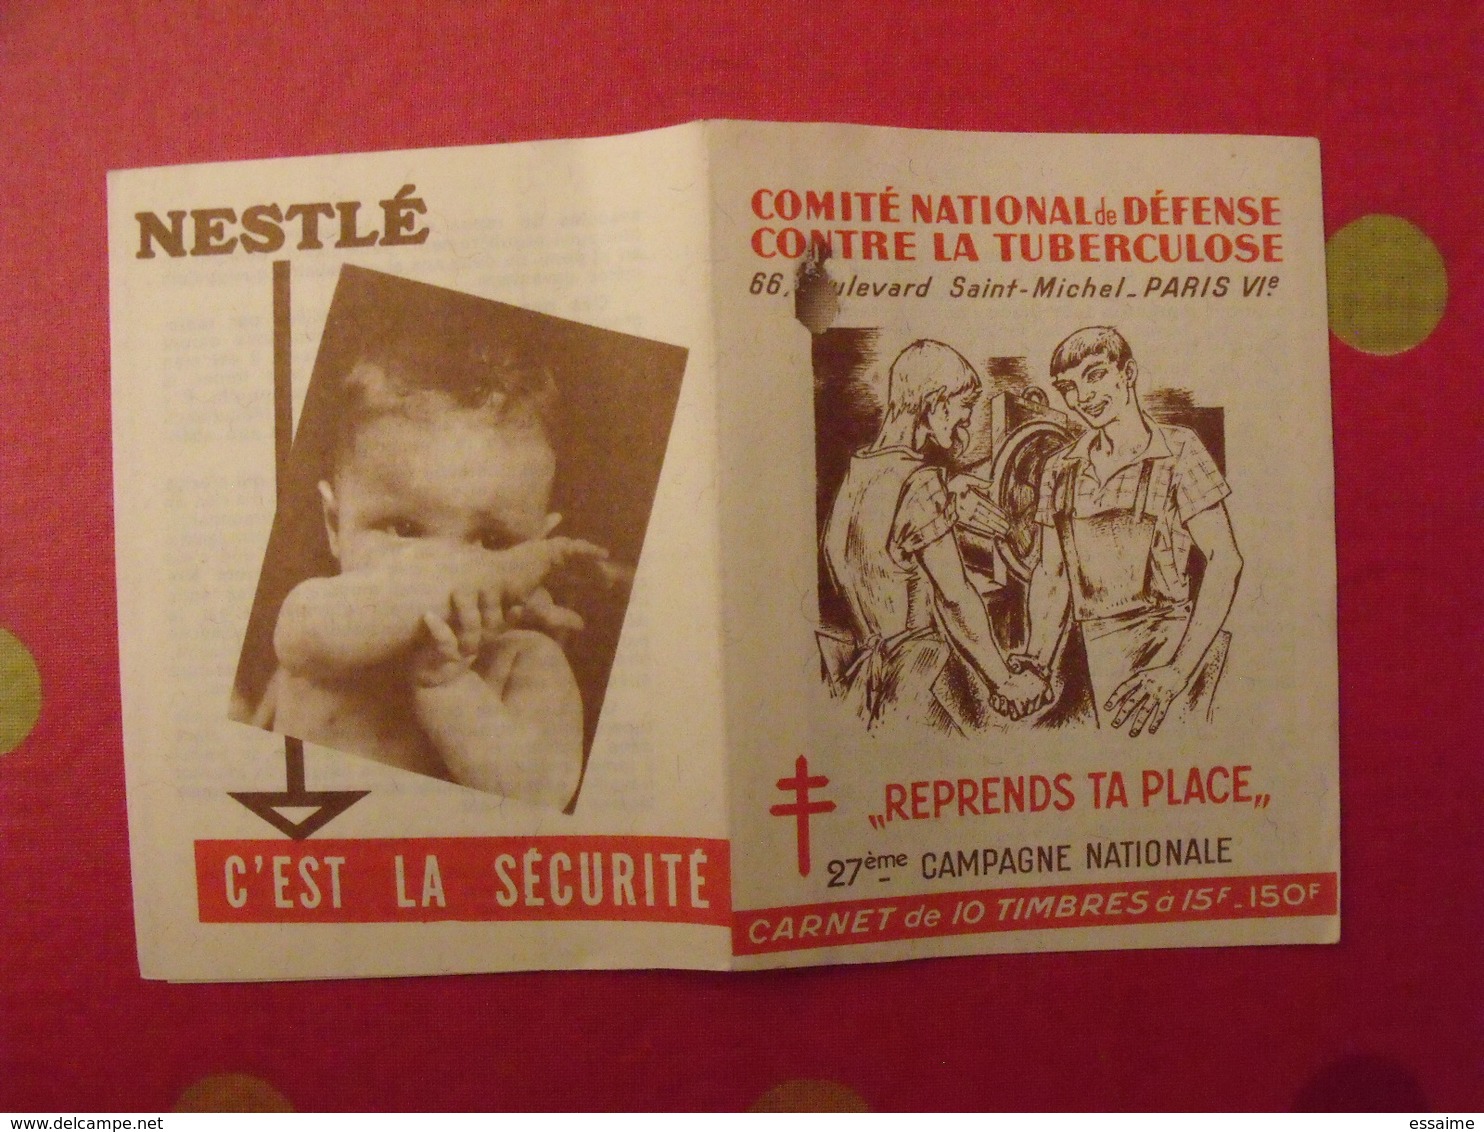 Carnet De Timbres Antituberculeux 1957-58. Pub Nestlé . Tuberculose Anti-tuberculeux. - Tegen Tuberculose